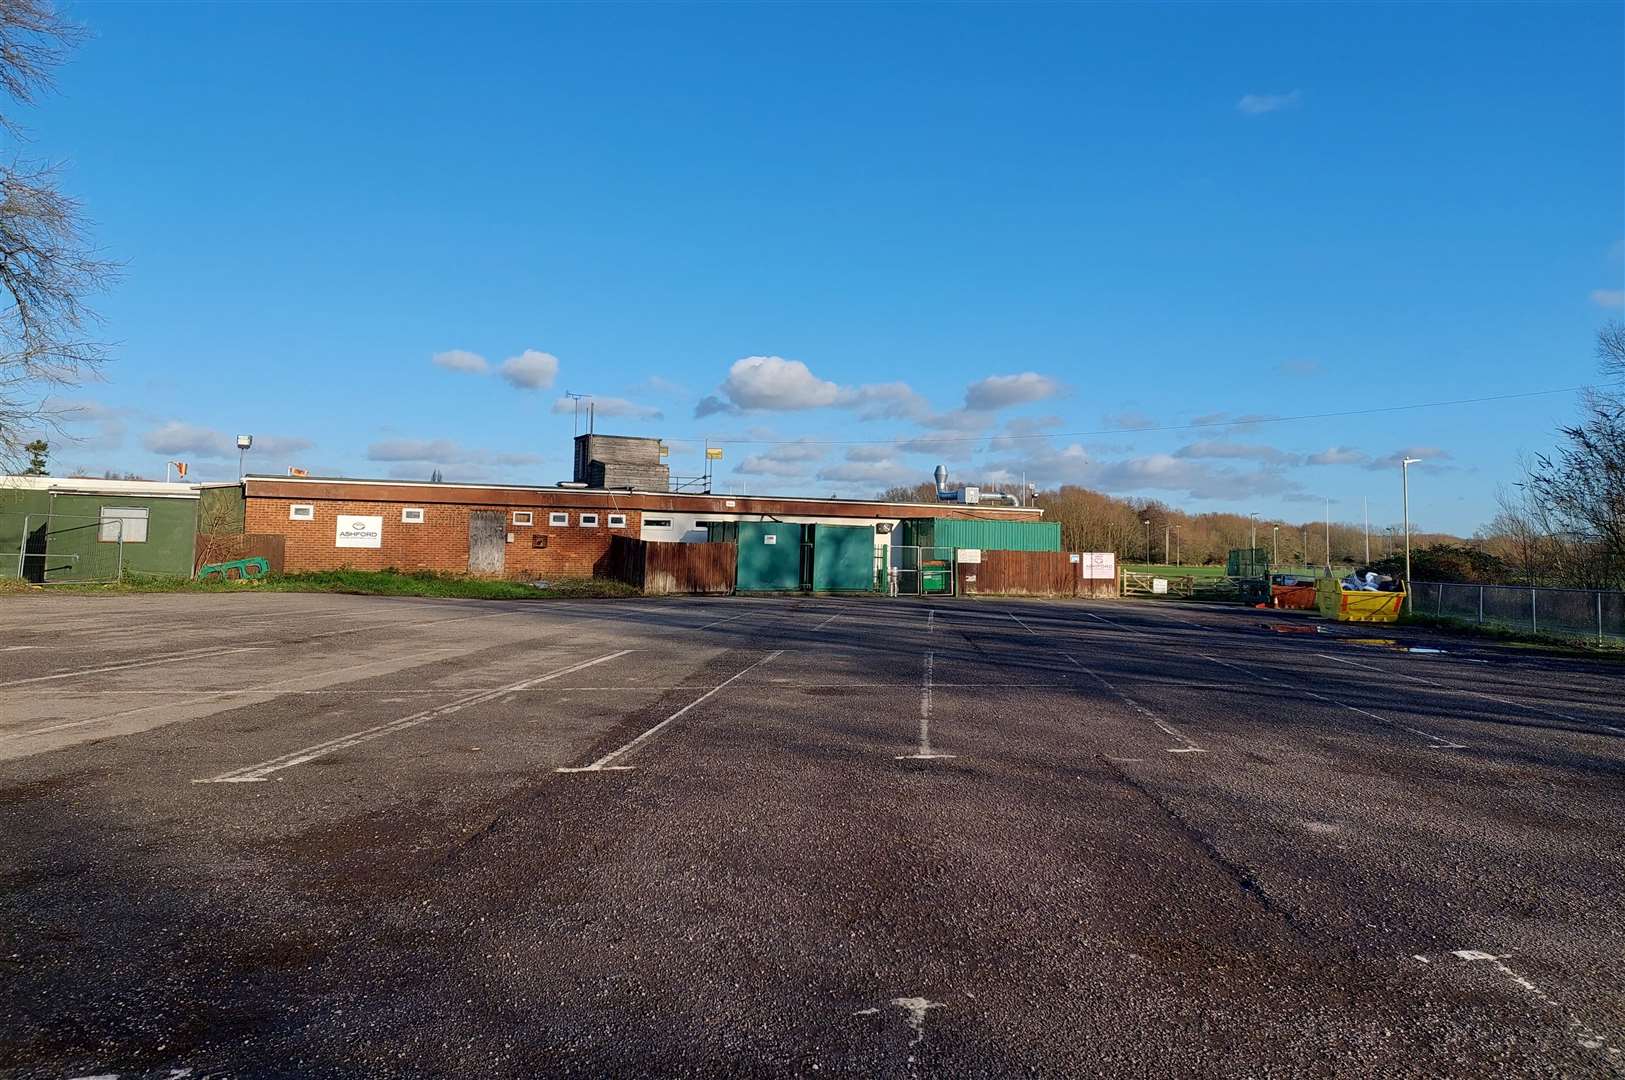 The existing Ashford Rugby Club car park